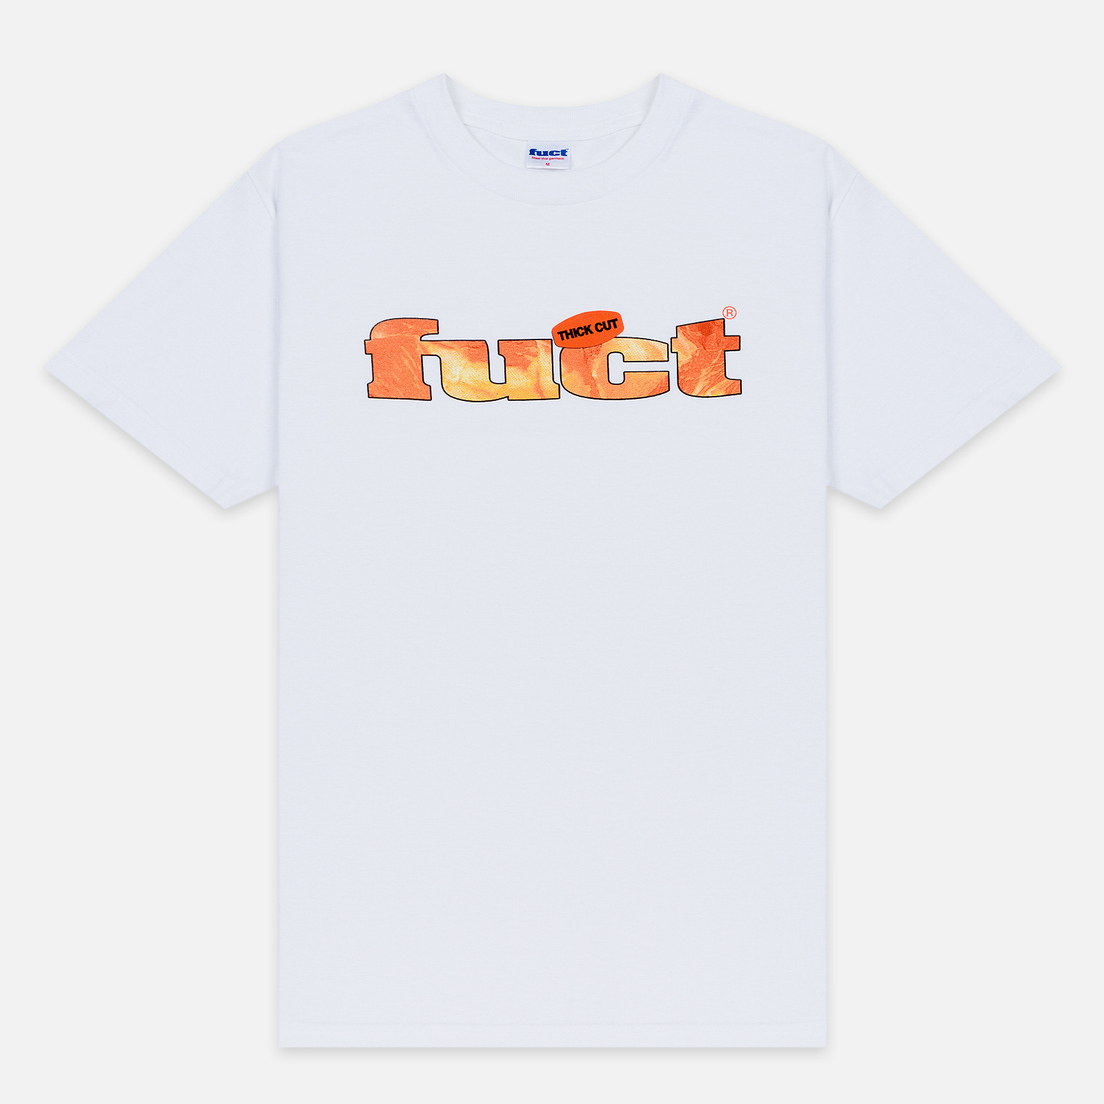 Fuct Мужская футболка Thick Cut